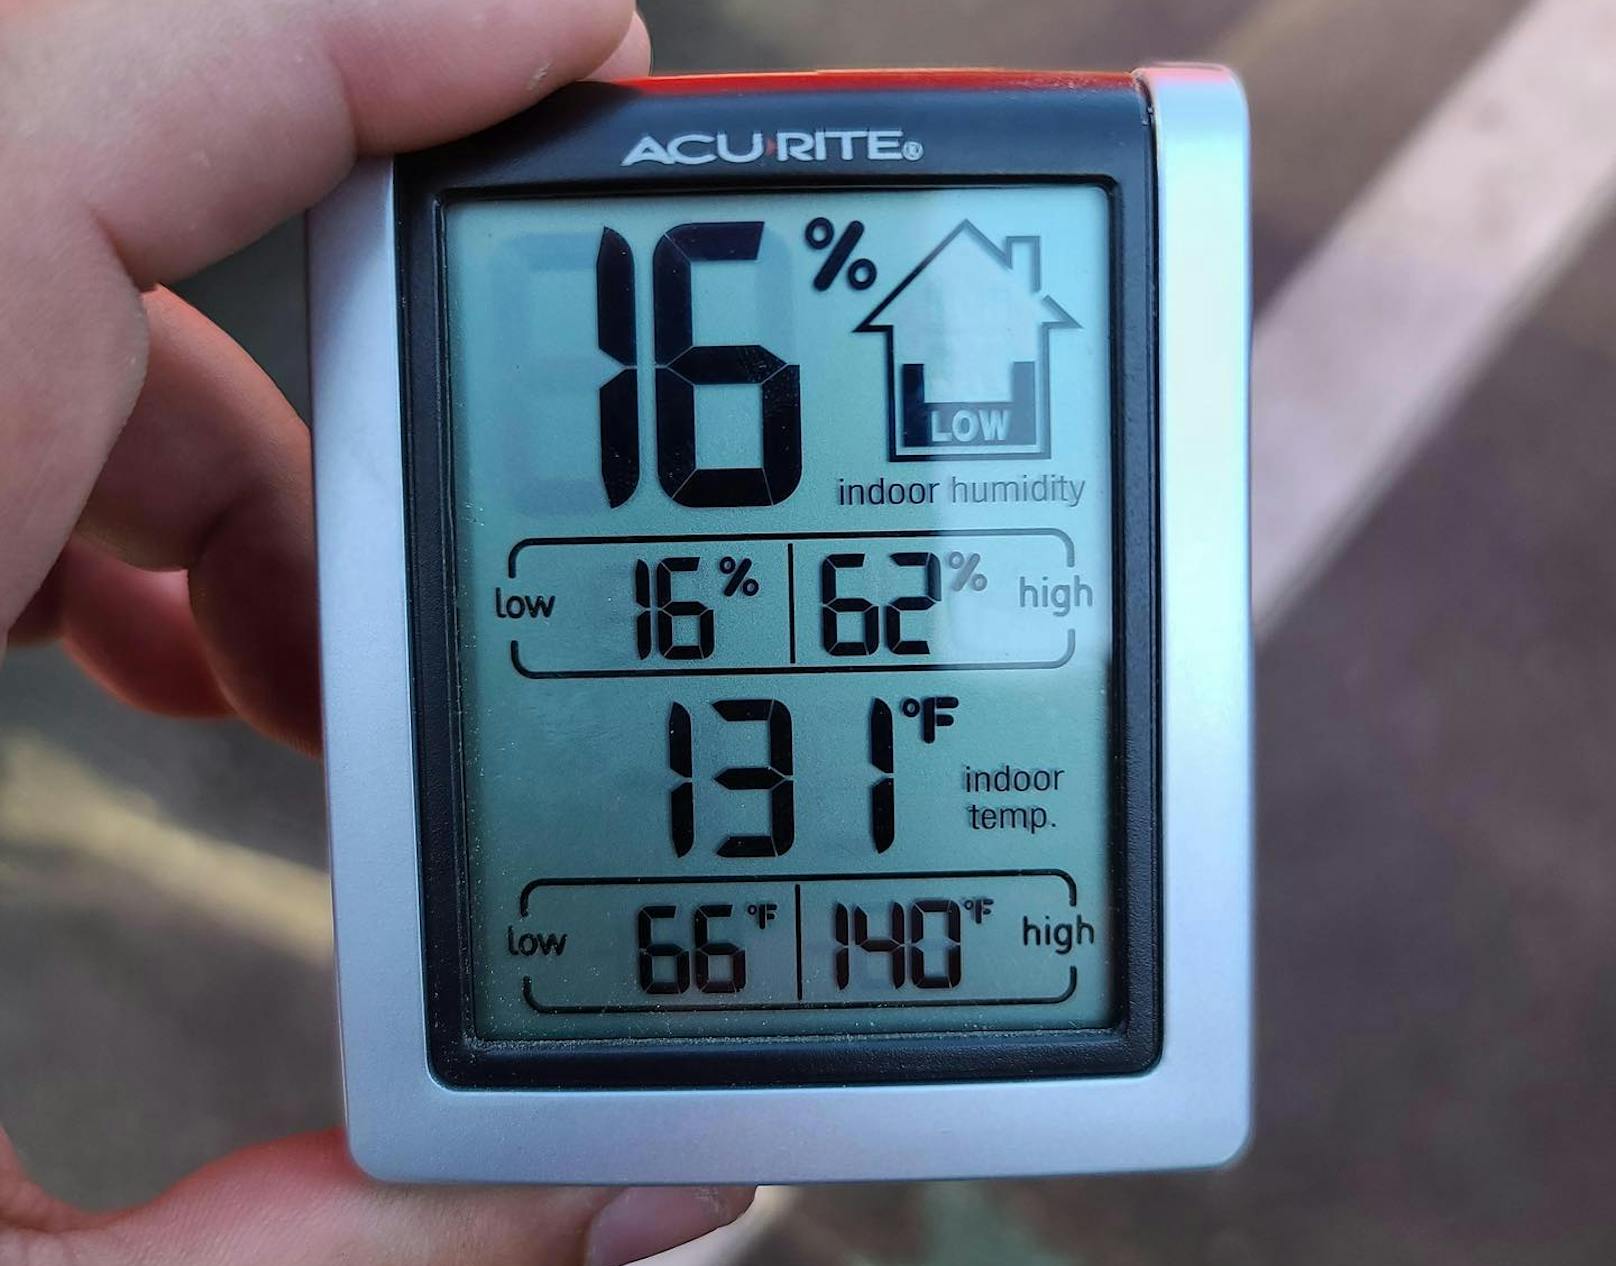 131 Grad Fahrenheit wurden in dem Hitzeauto gemessen